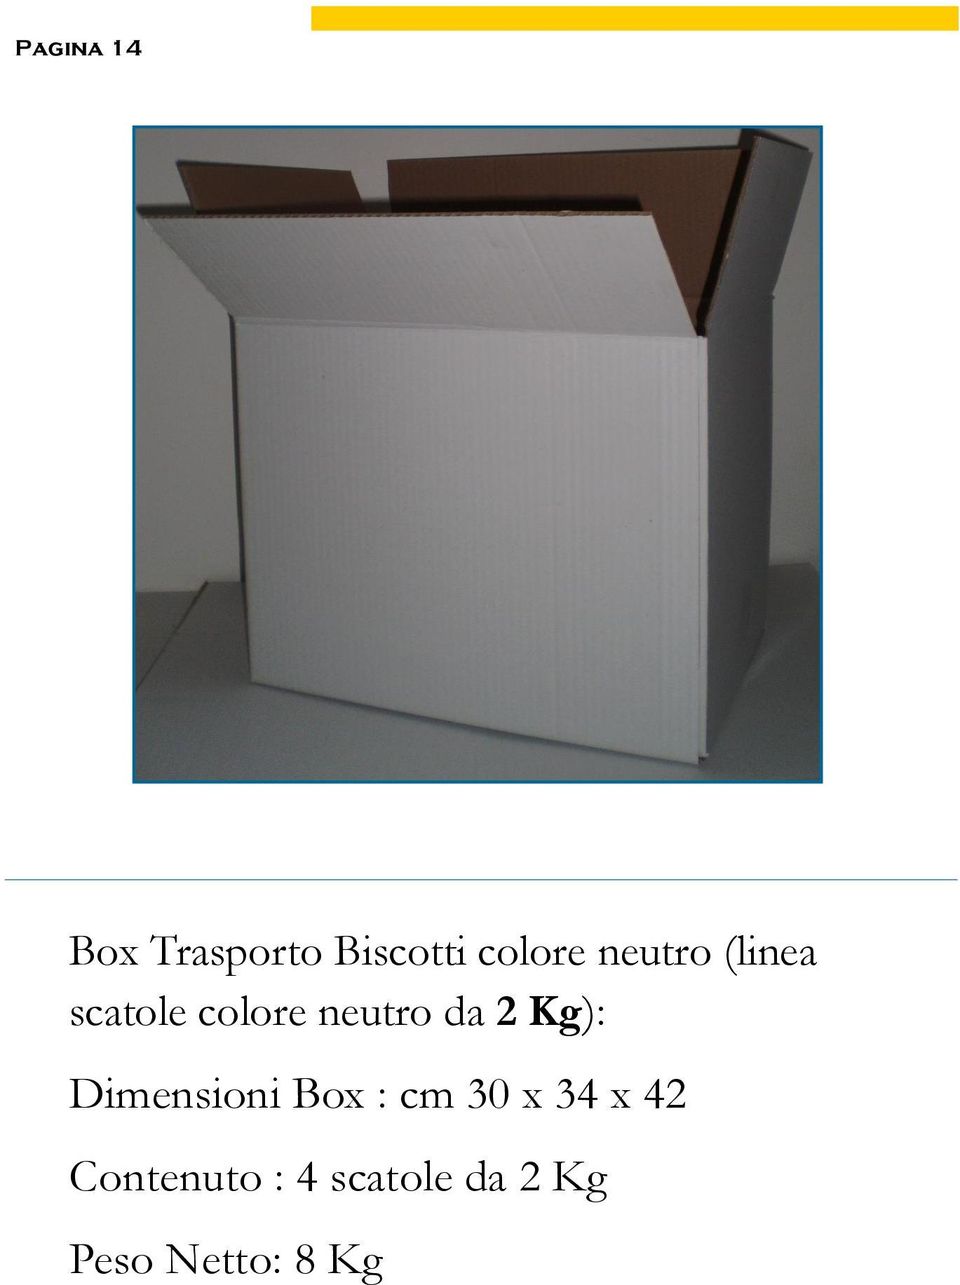 Kg): Dimensioni Box : cm 30 x 34 x 42